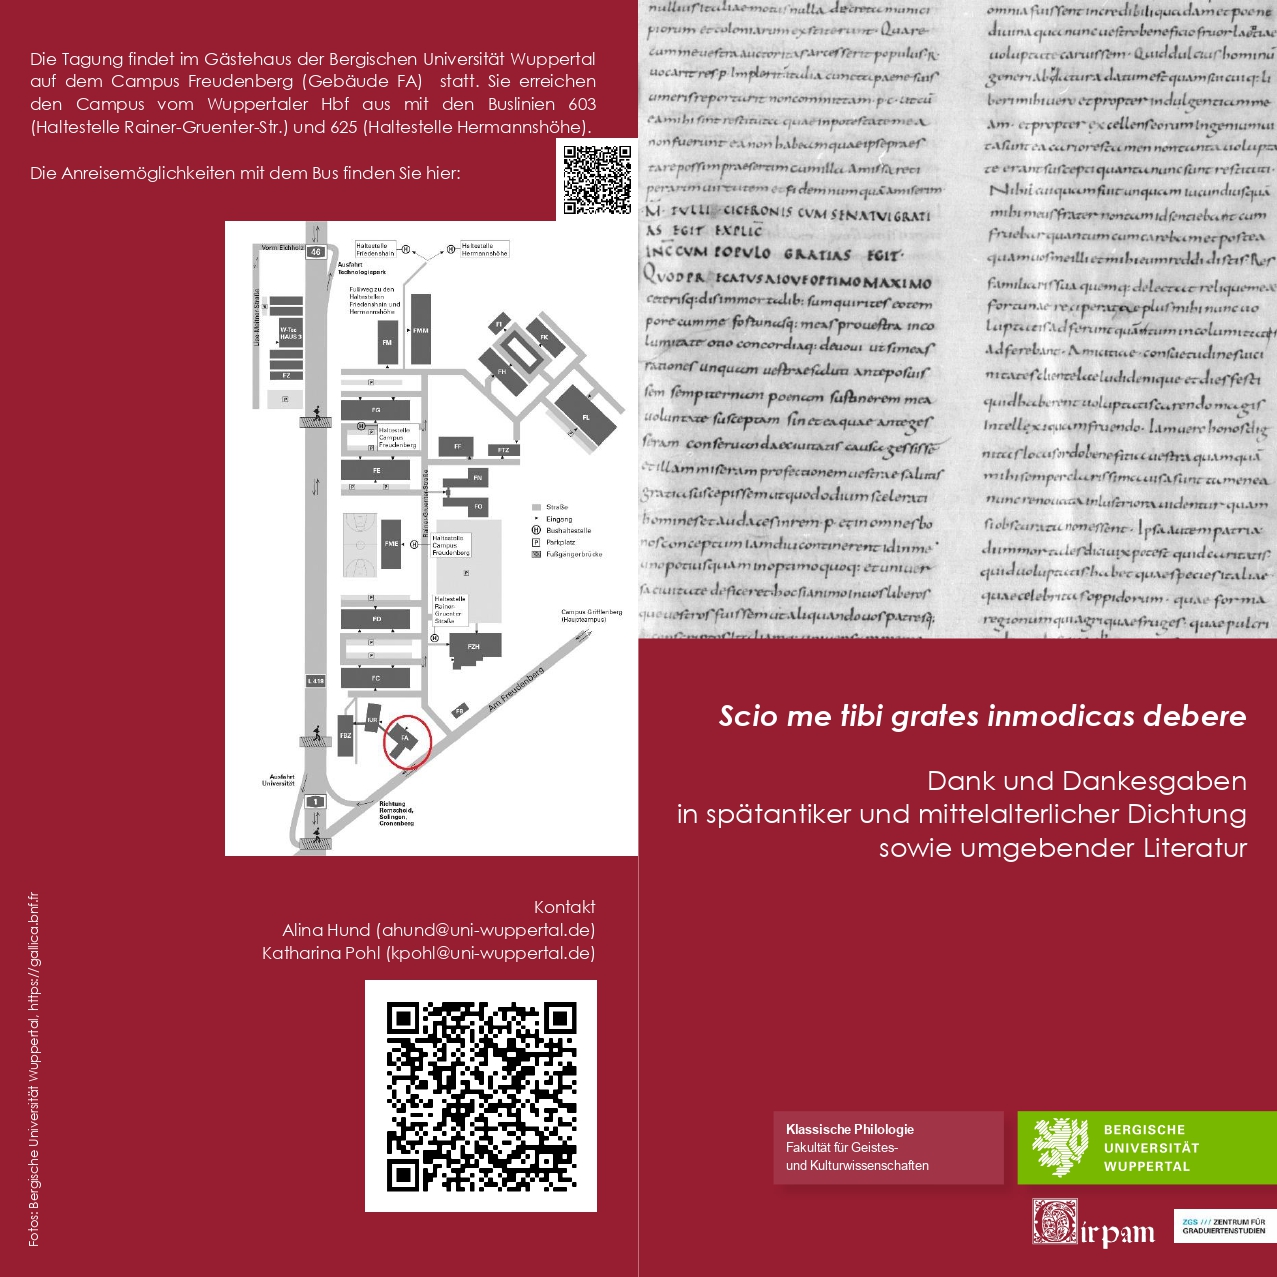 Flyer mit Programm GIRPAM Doktorandencolloquium 1208 page 0001